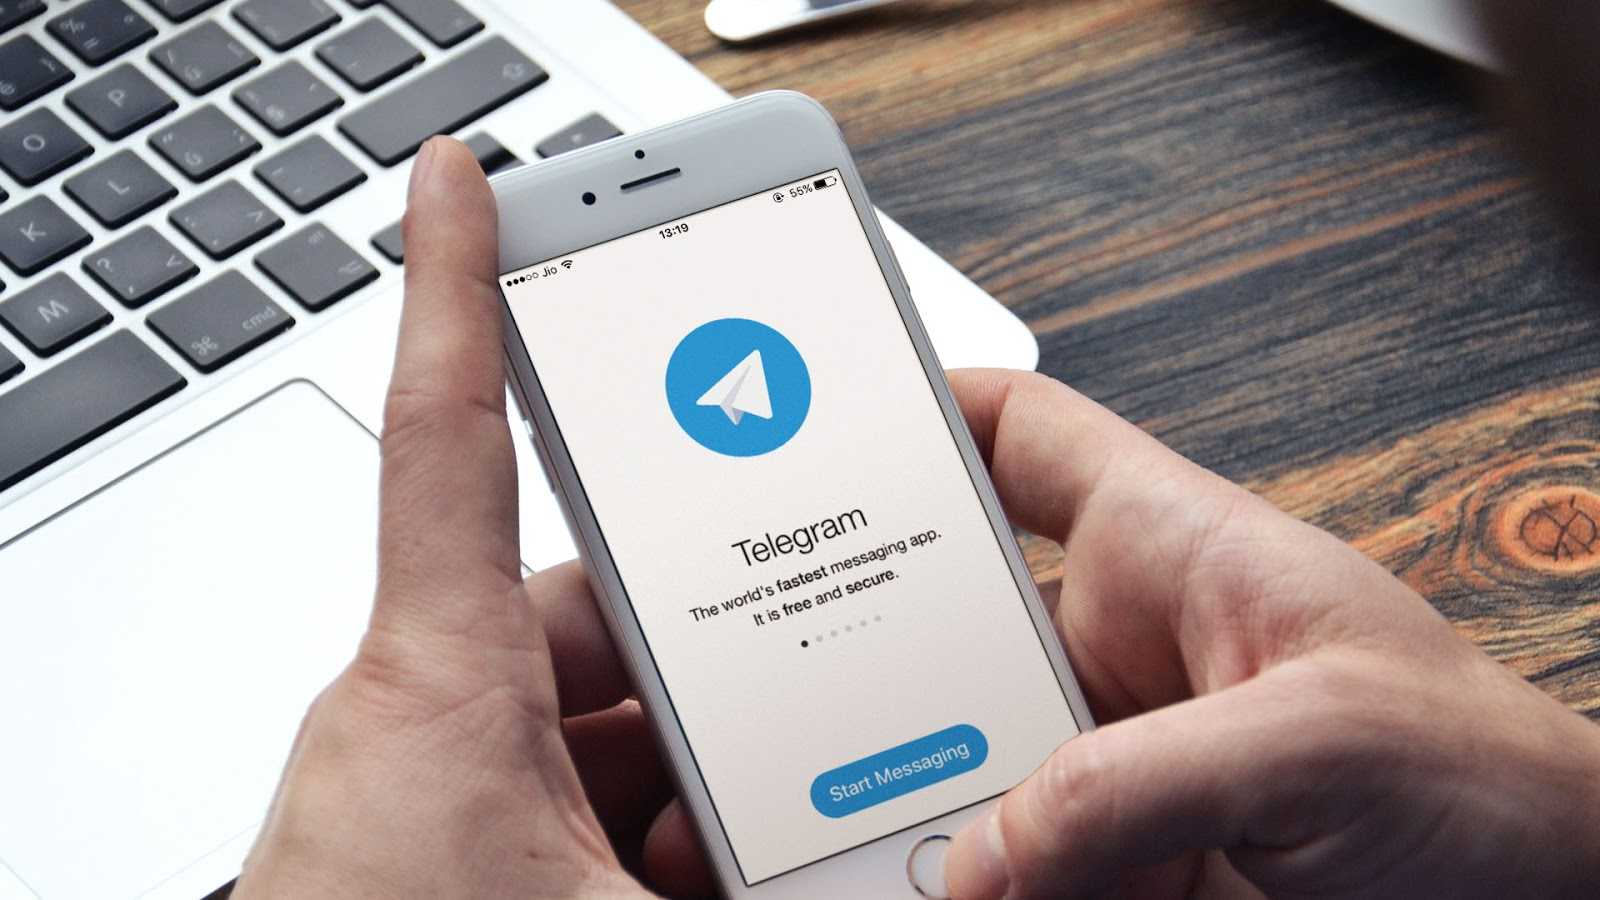 Германия хочет оштрафовать Telegram на 55 миллионов евро